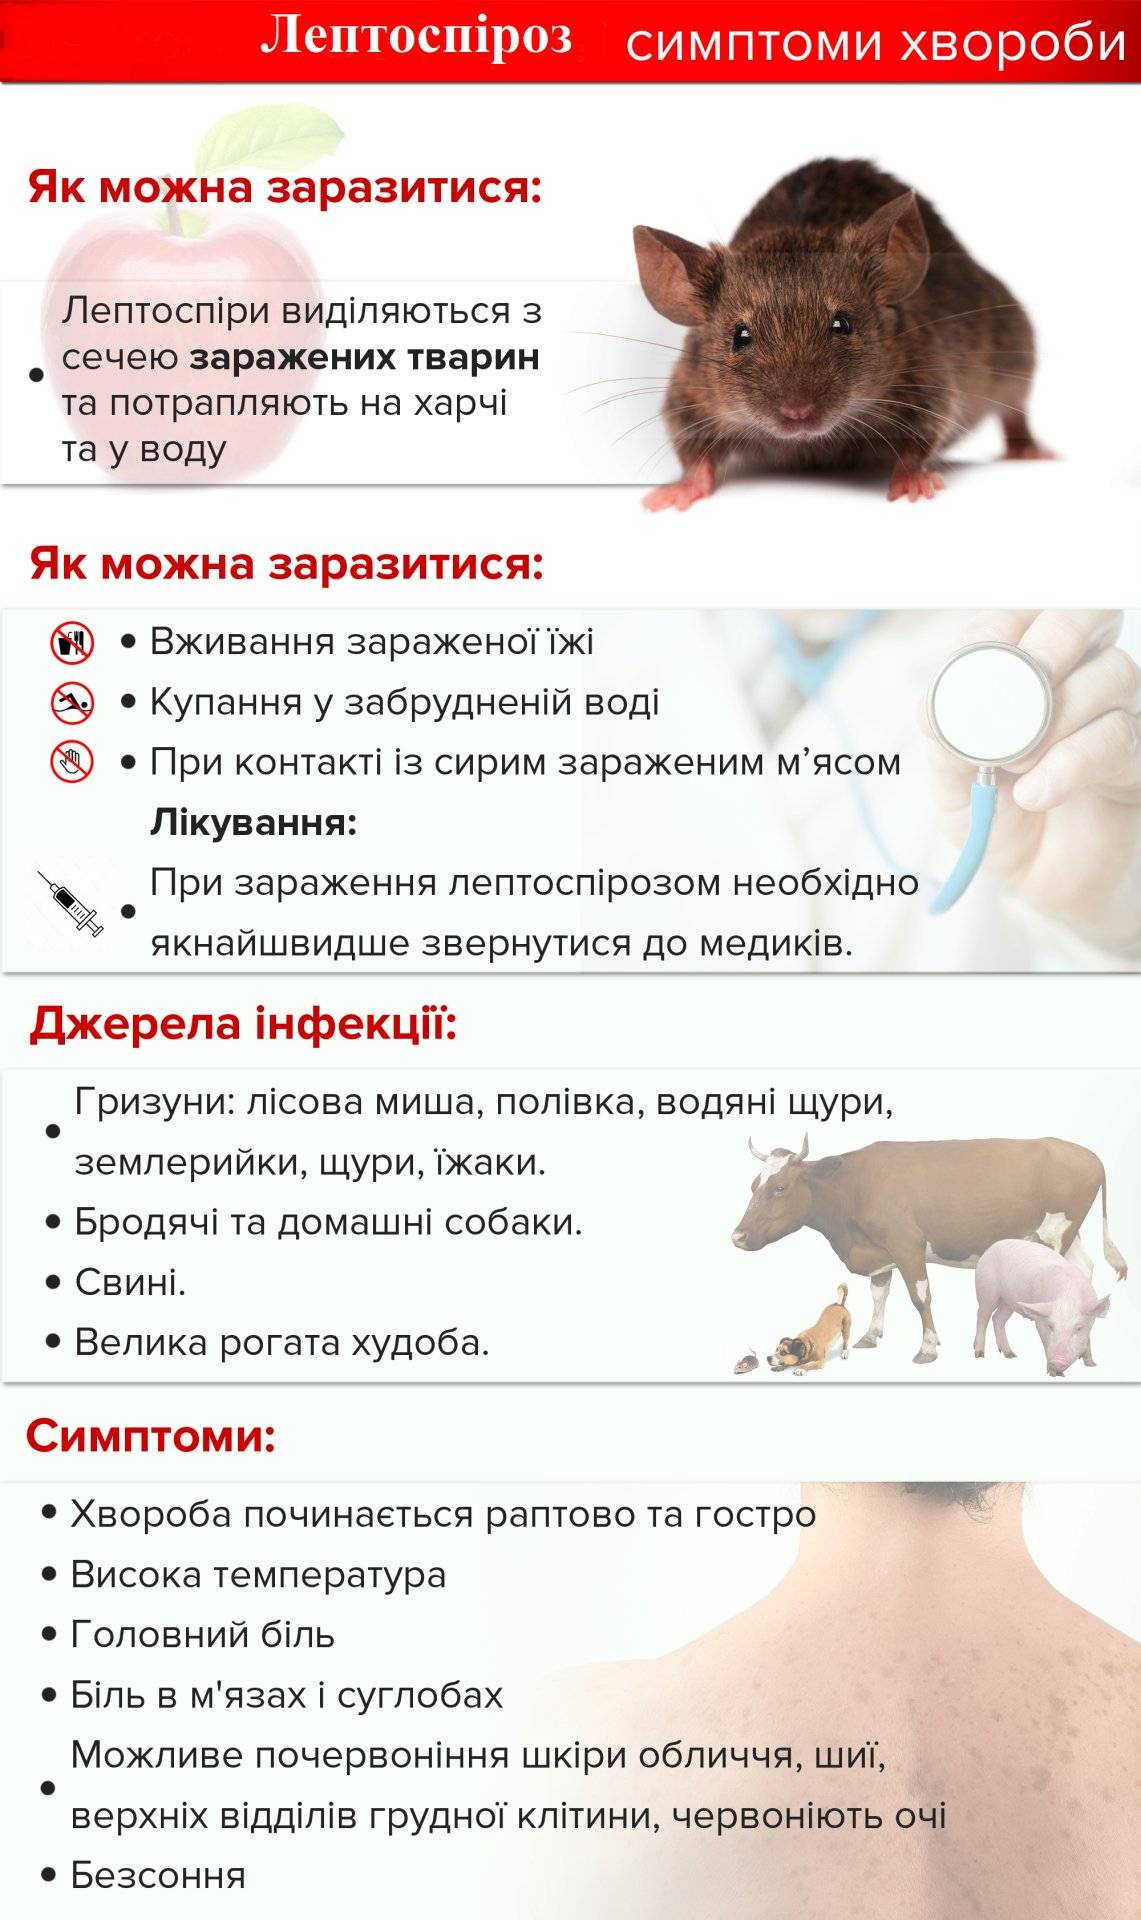 Болезни переносимые грызунами, опасные для человека и животных — симптомы, лечение, препараты, причины появления